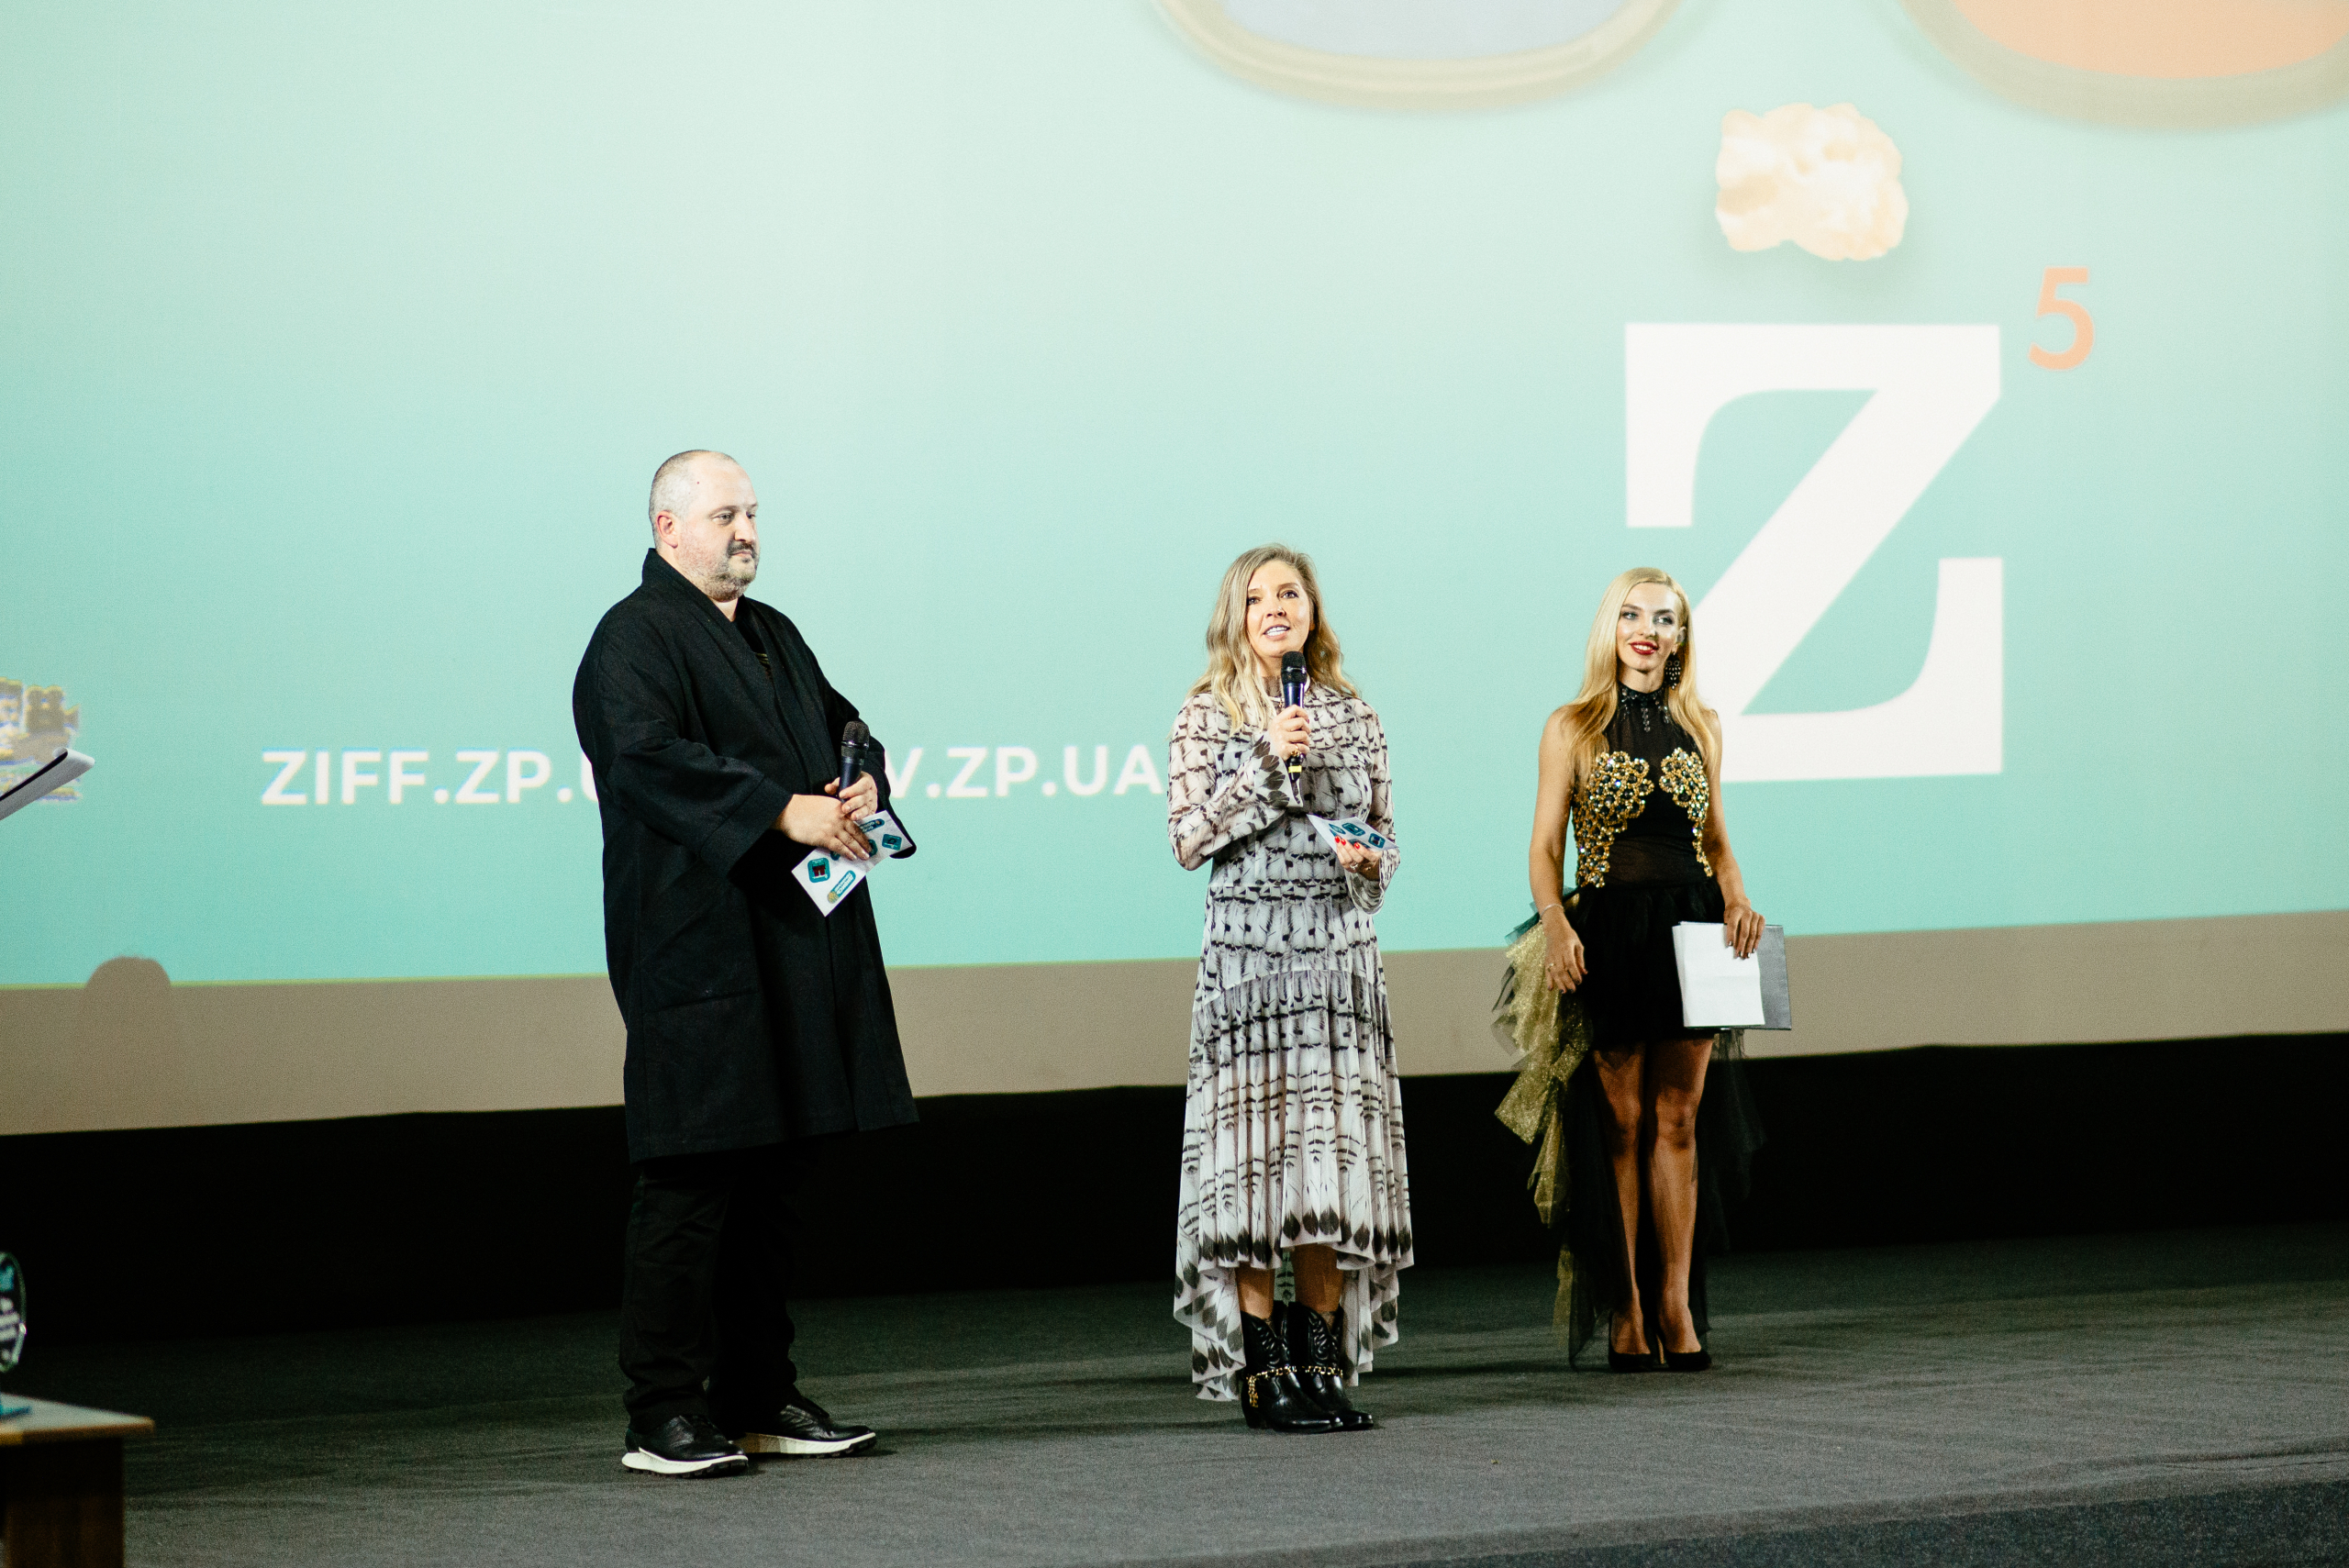 Церемонія нагородження переможців Запорізького кінофестивалю ZIFF 2021